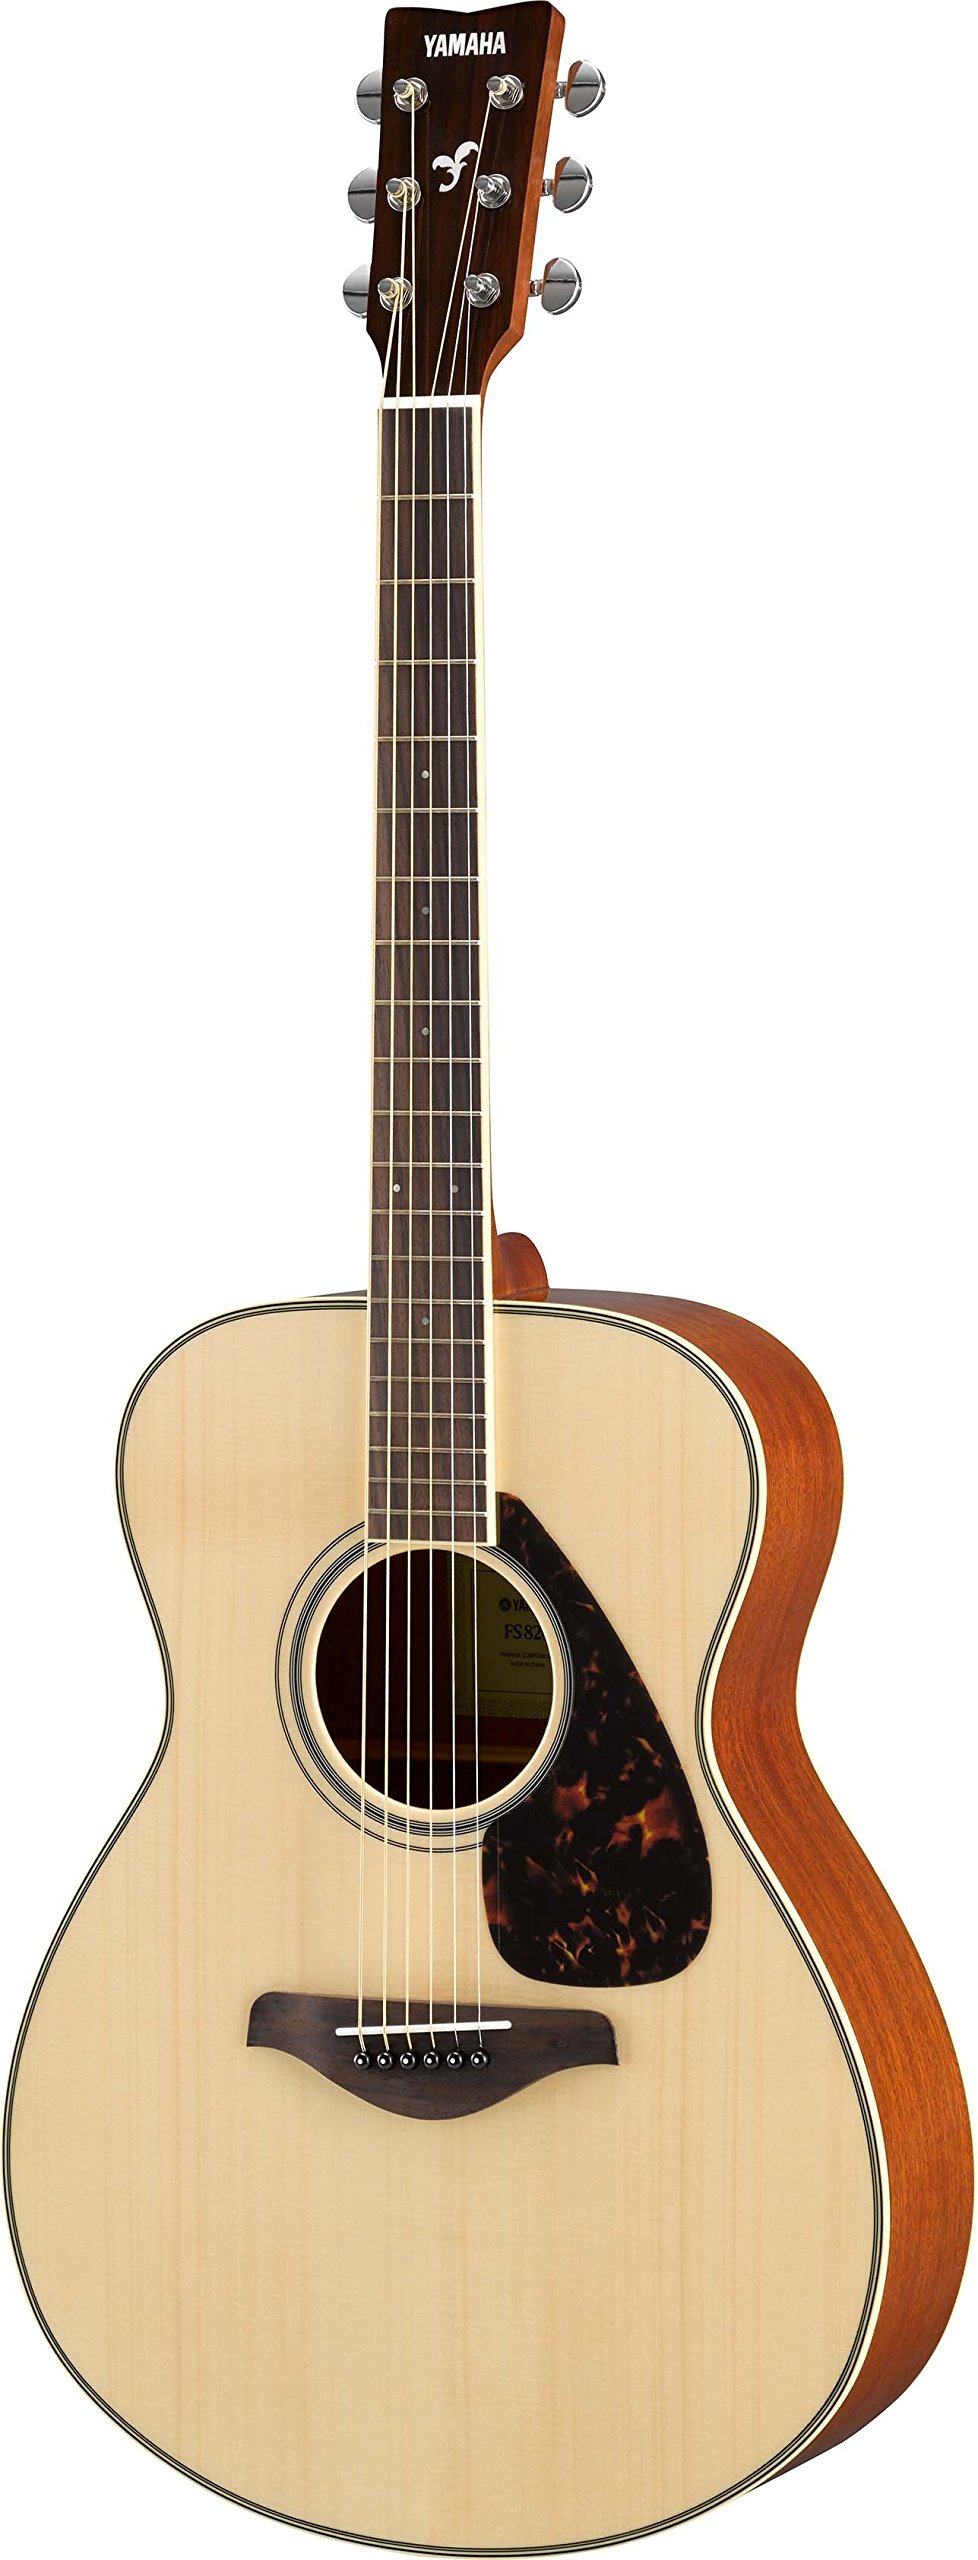 YAMAHA FG820 솔리드 탑 어쿠스틱 기타